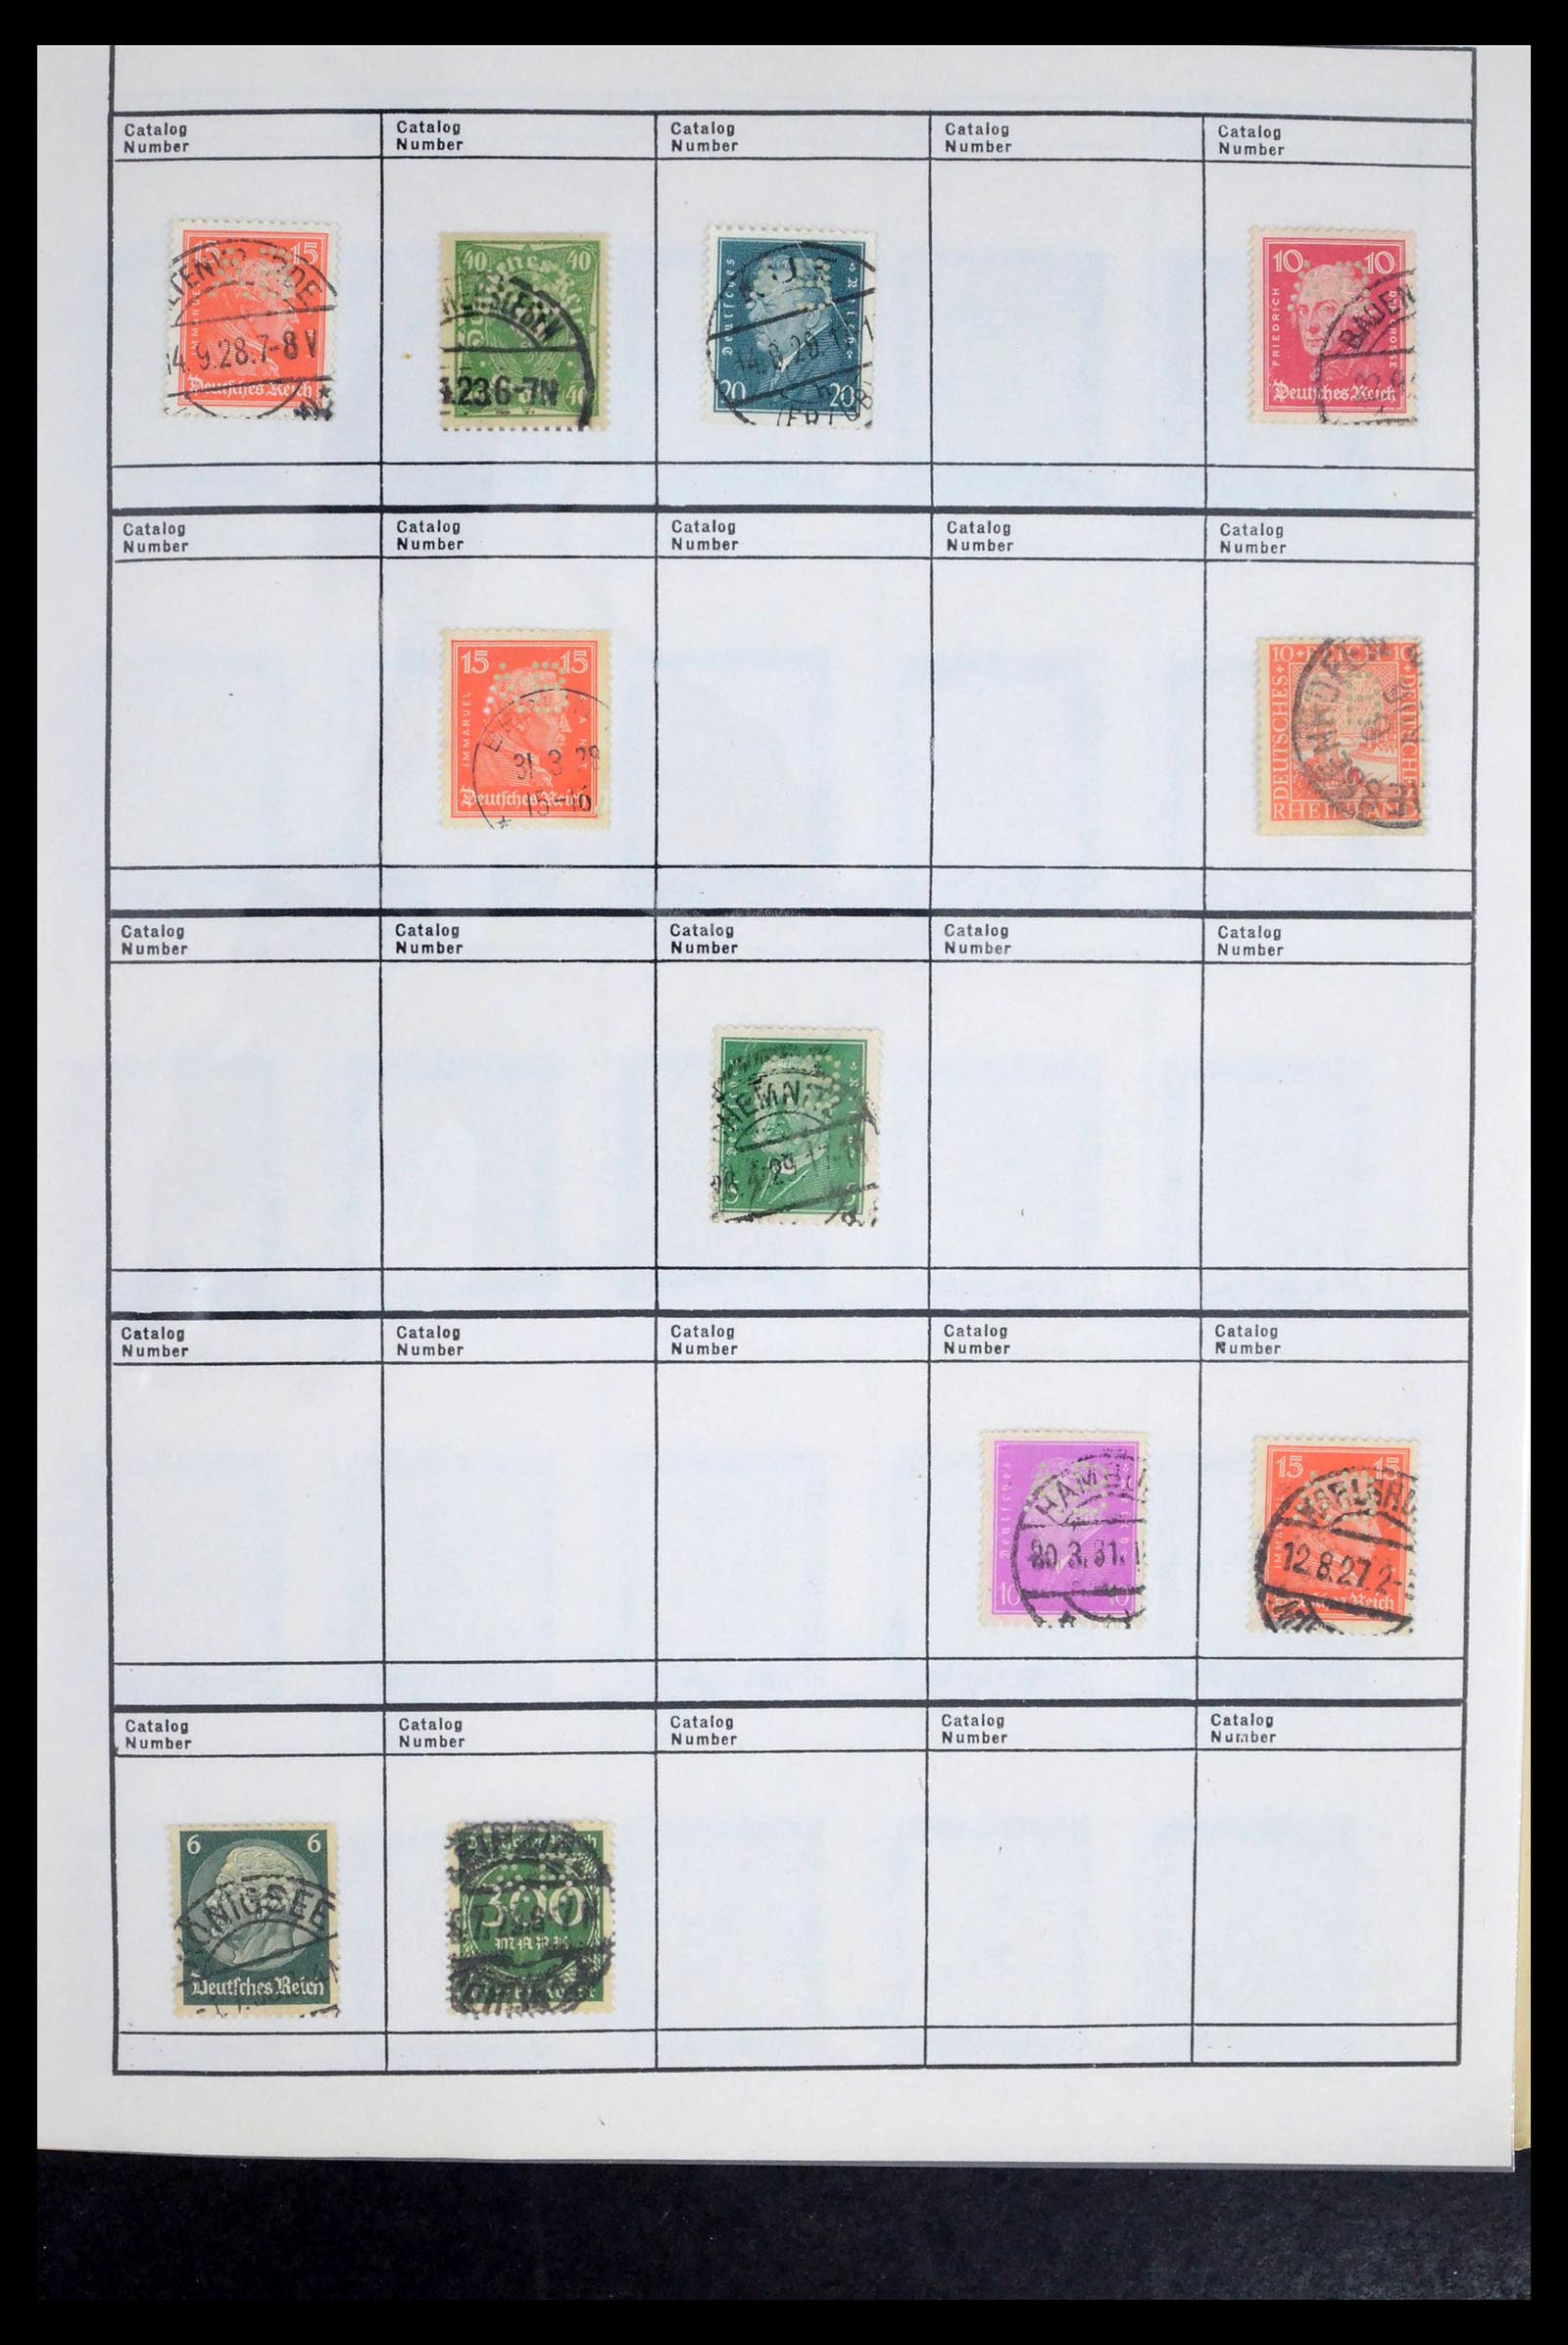 39480 0007 - Stamp collection 39480 German Reich perfins 1880-1955.